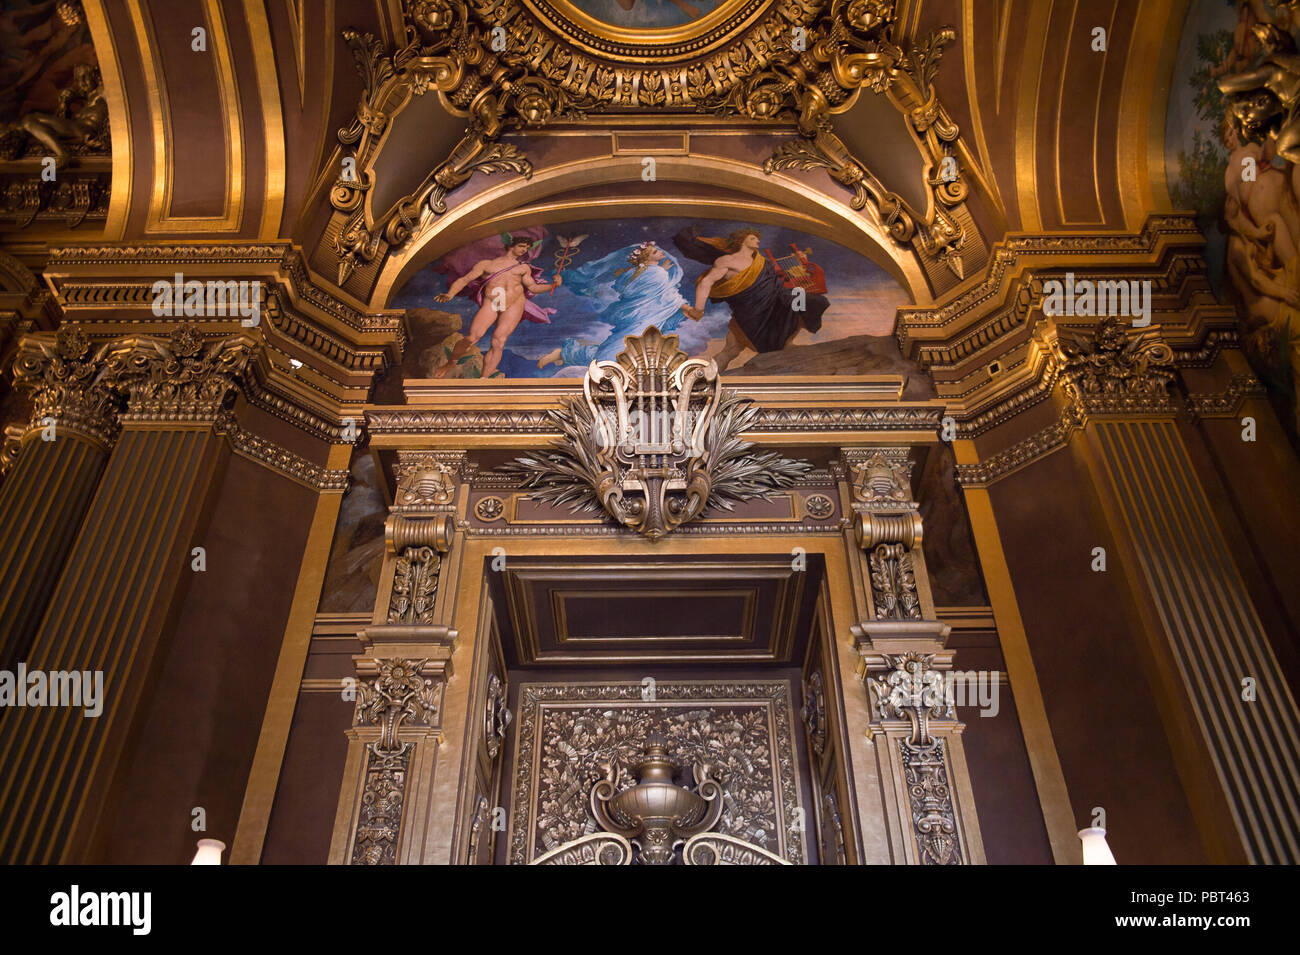 Parigi, Francia - giu 6, 2015: Interno del Palais Garnier (Opera Garnier) di Parigi, Francia. Esso è stato originariamente chiamato La Salle des Capucines Foto Stock